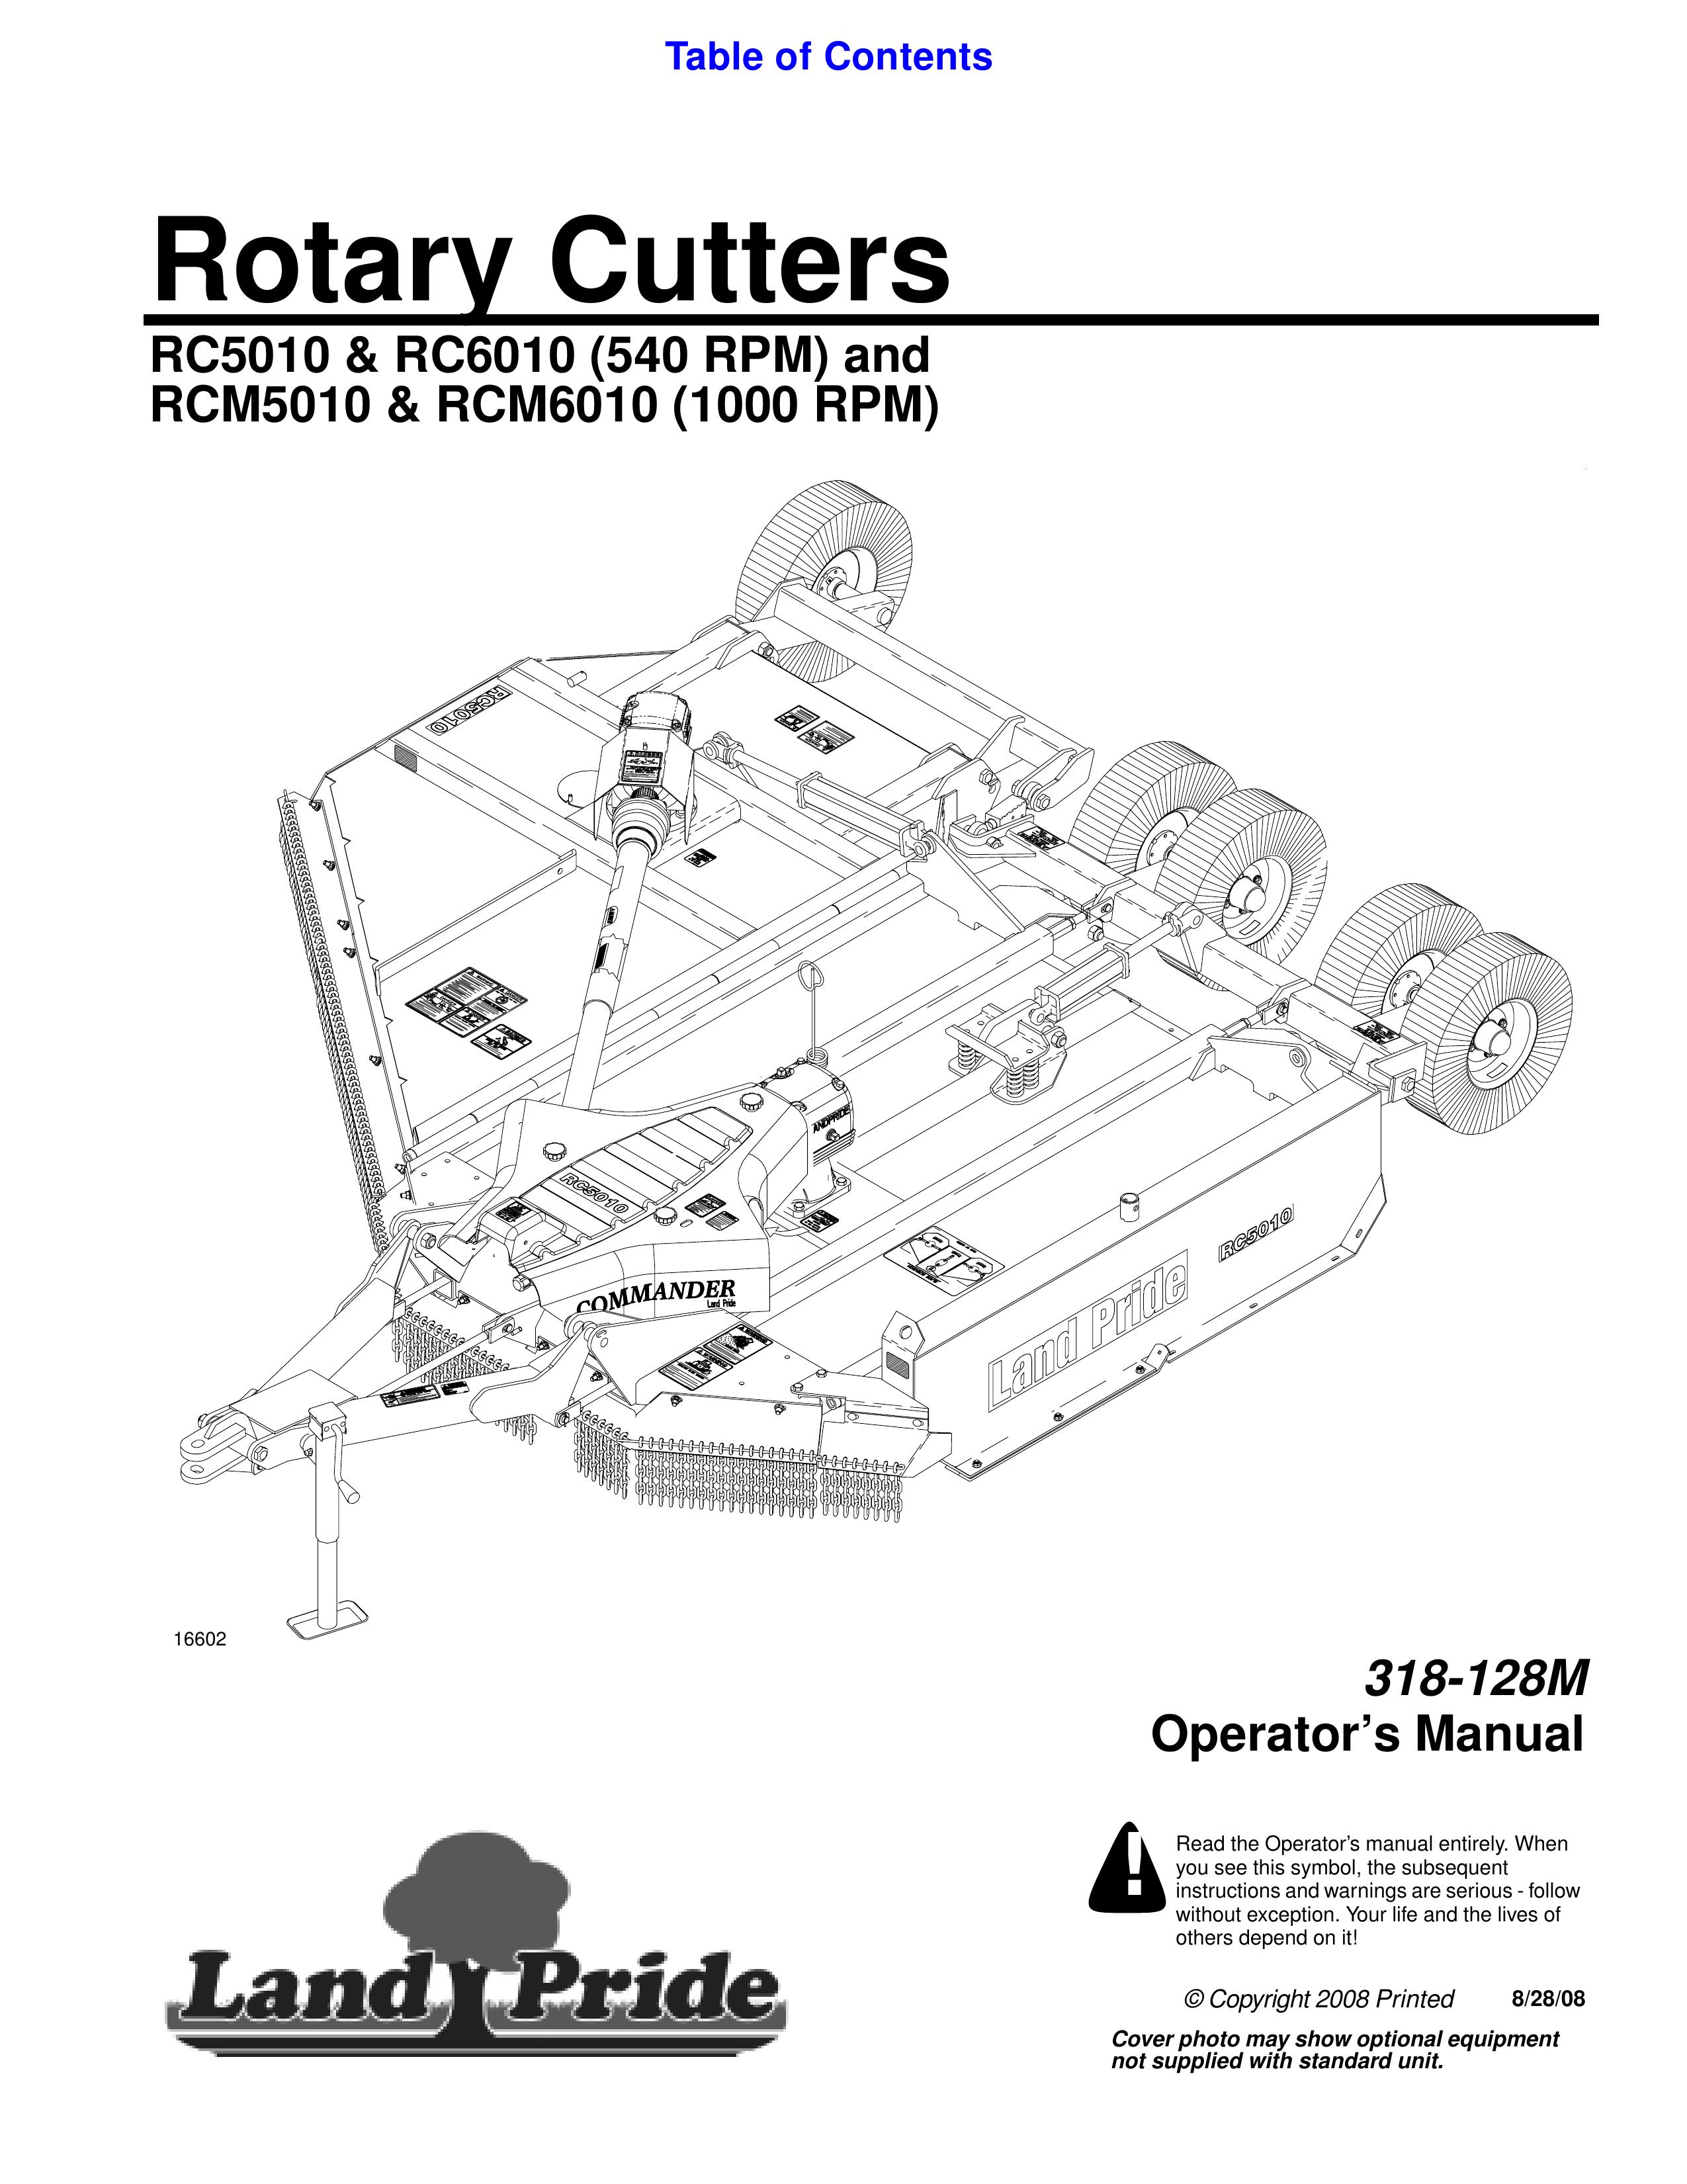 Land Pride RCM5010 Brush Cutter User Manual